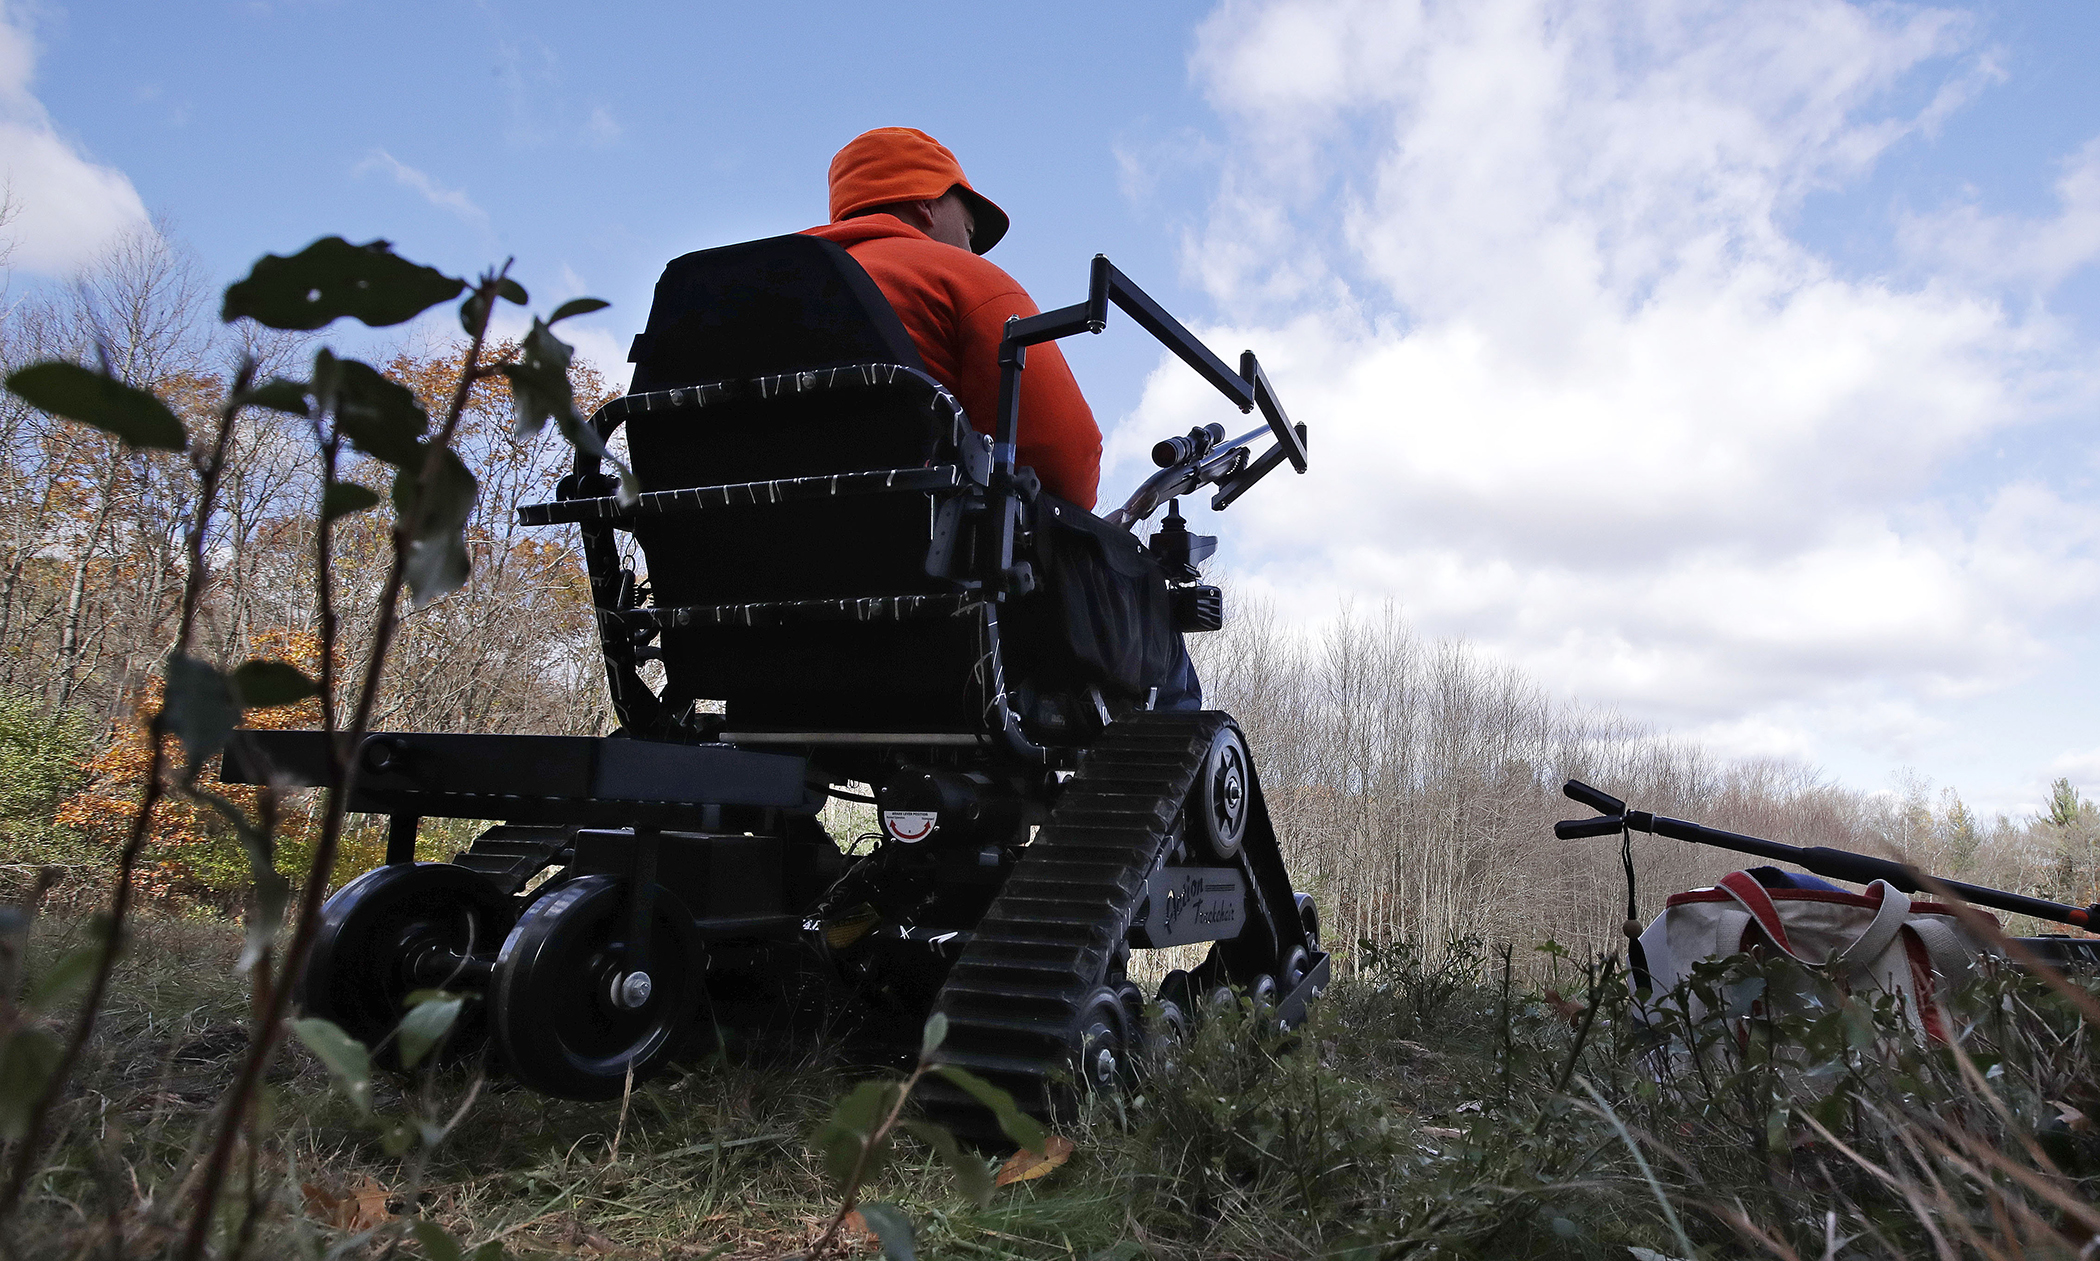 paraplegic hunter Gary Dupuis waits in his all-terrain wheelchair, equipped with a shooting rack for his shotgun